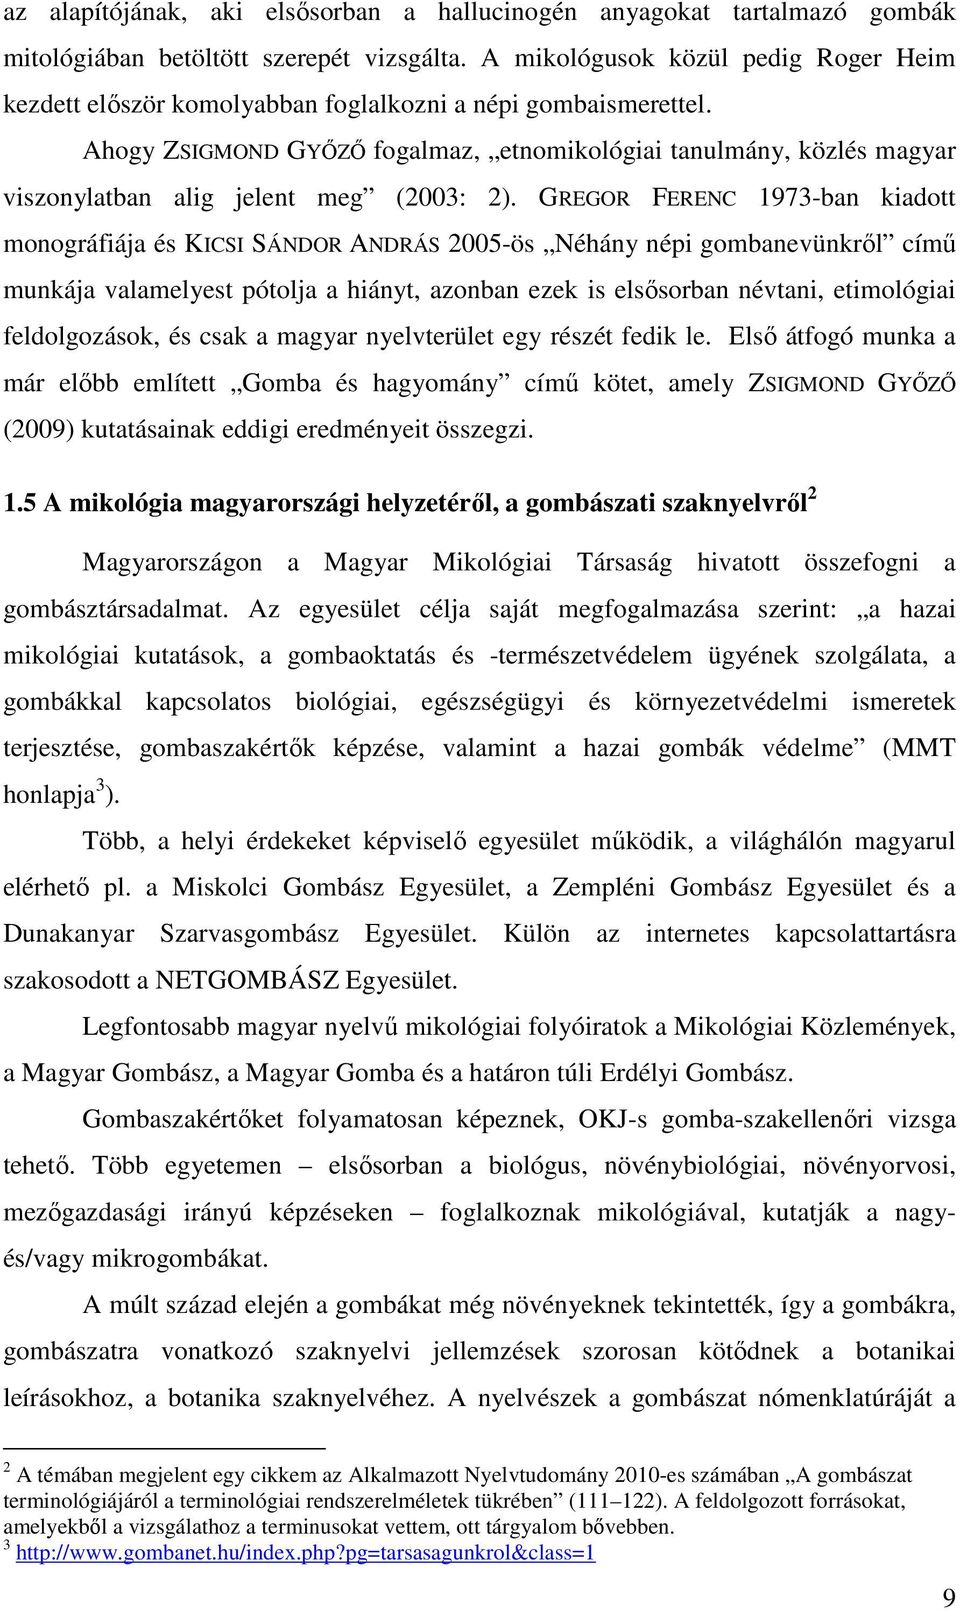 Ahogy ZSIGMOND GYİZİ fogalmaz, etnomikológiai tanulmány, közlés magyar viszonylatban alig jelent meg (2003: 2).